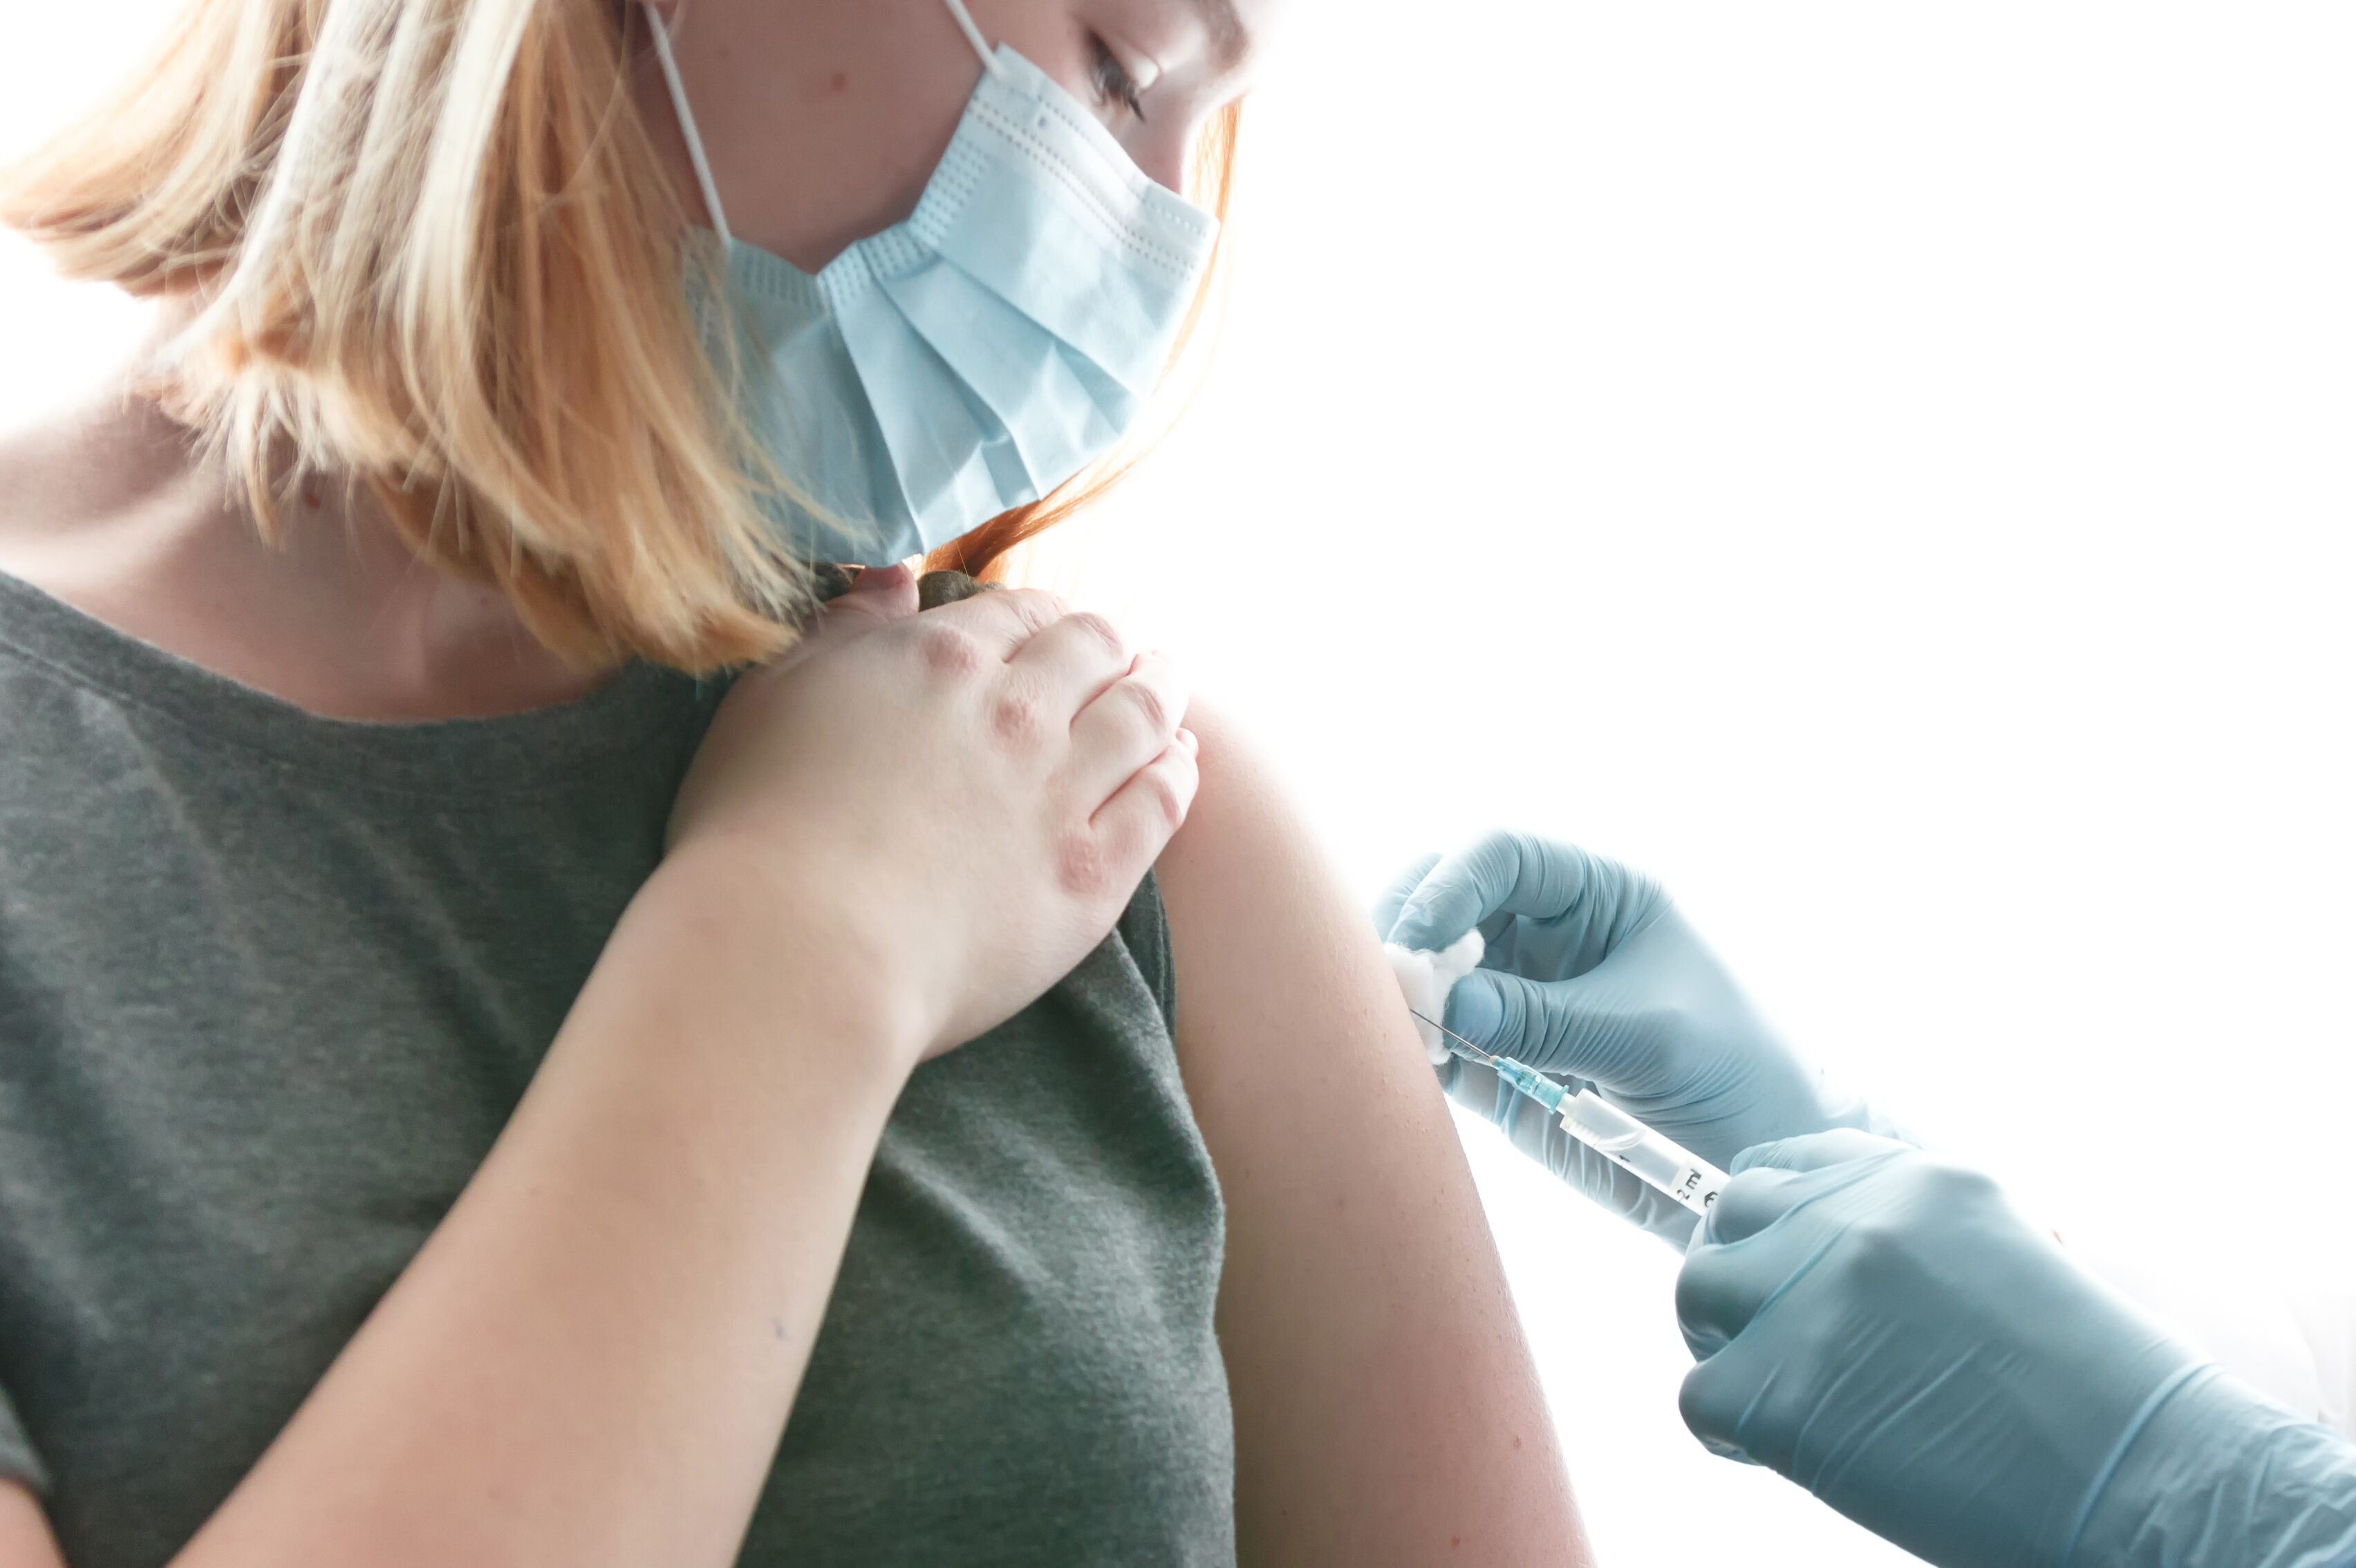   Vergabe neuer Impftermine | Das Deutsche Rote Kreuz bietet Tausende neue Erstimpfungen an  